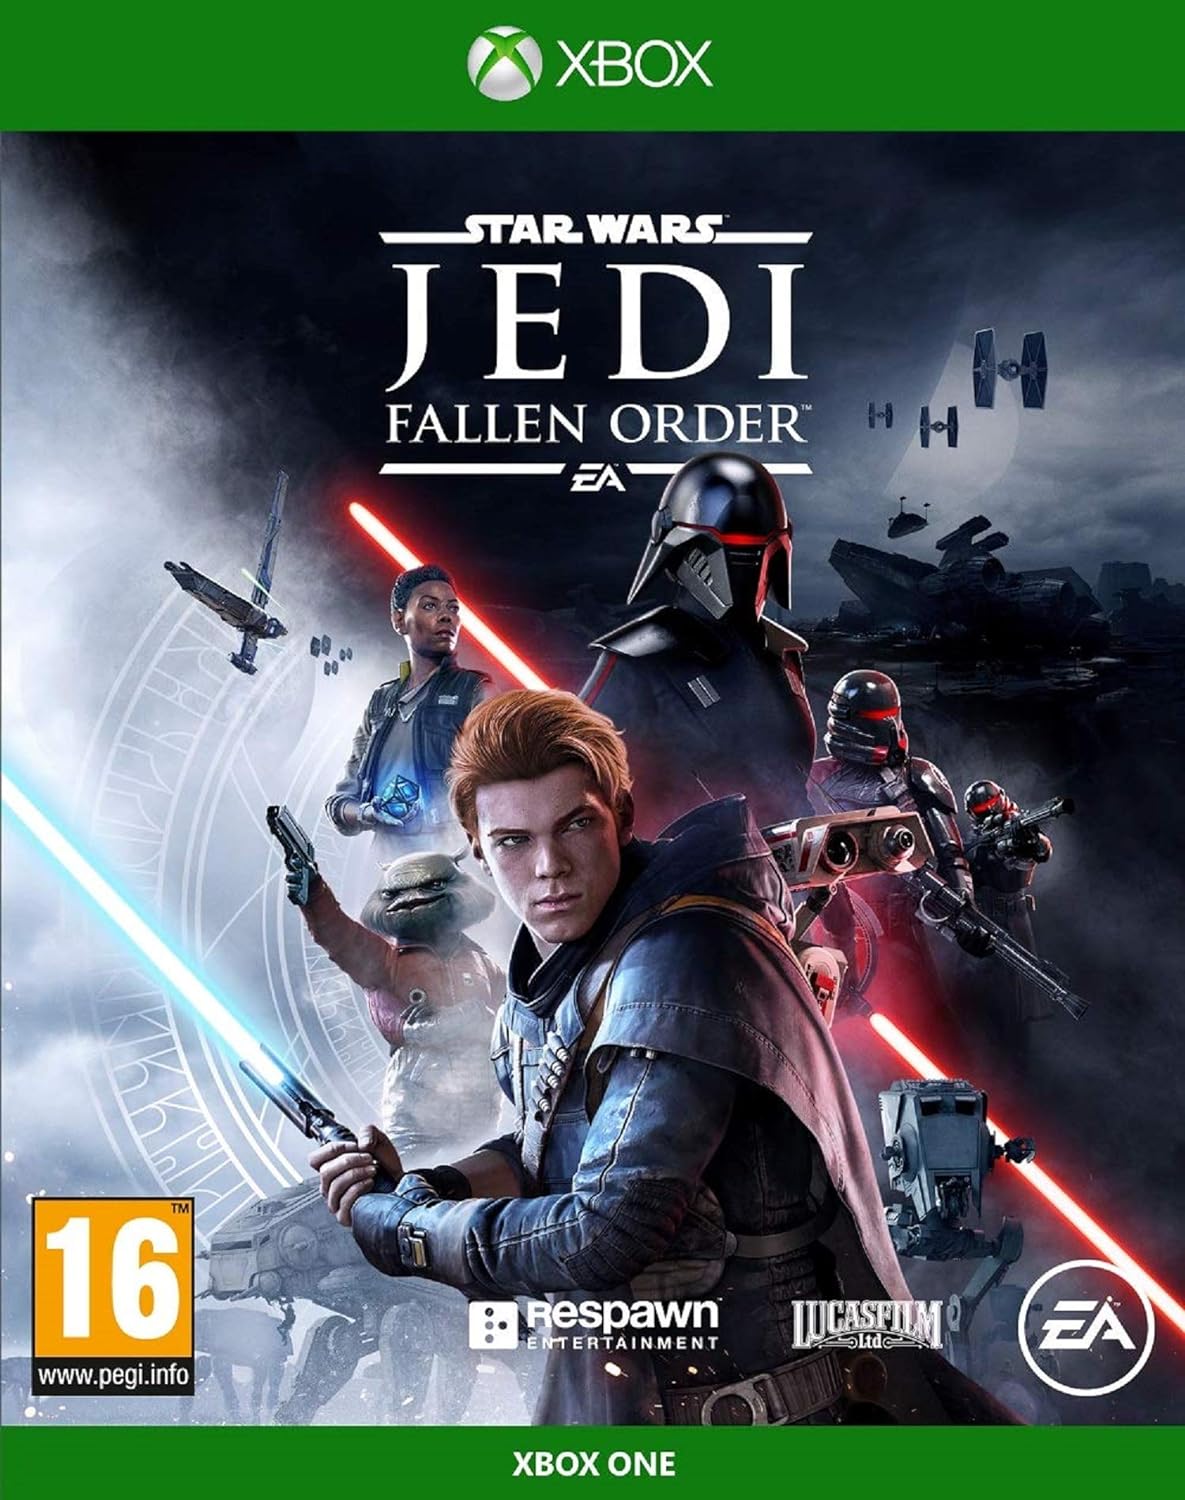 EA - Star Wars Jedi Fallen Order - Xbox One - PEGI 16